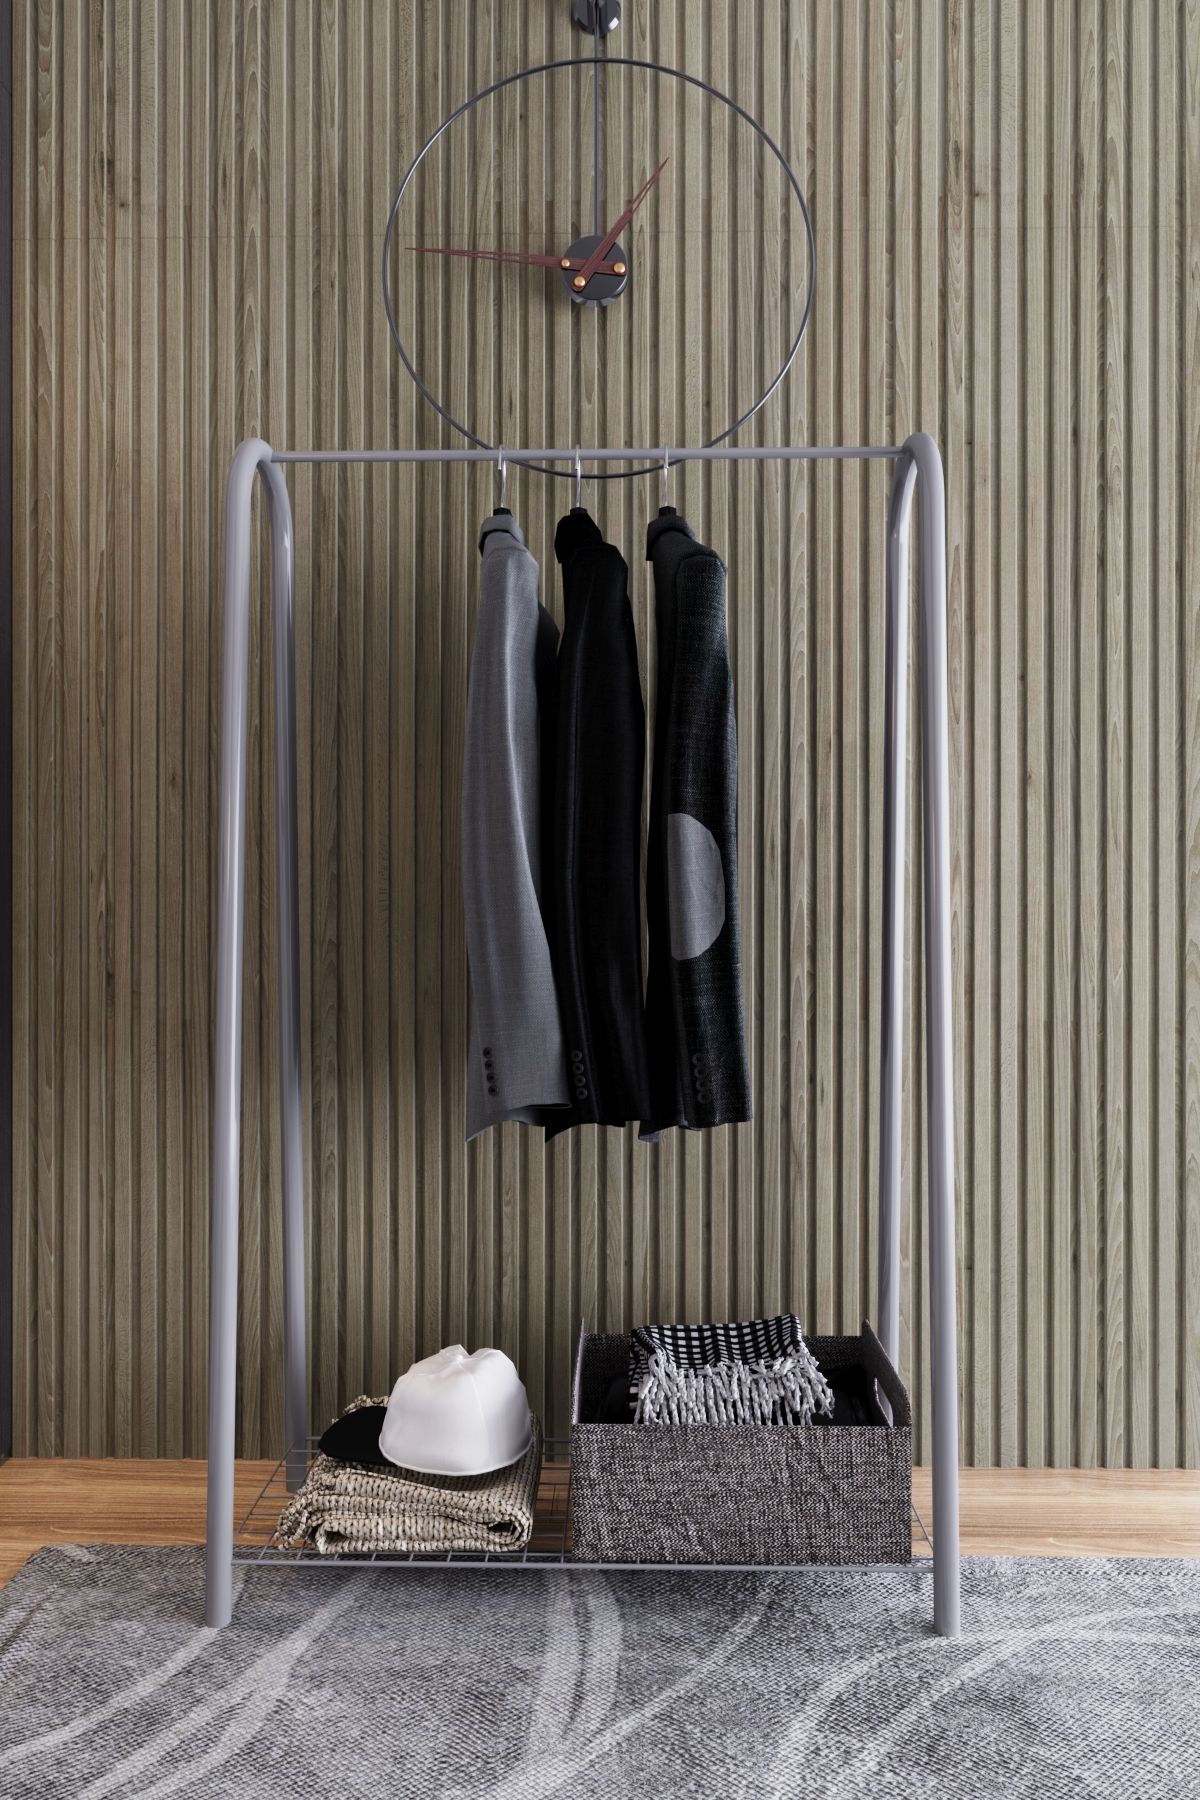 TOPRAK E-TİCARET Elit-1 Gri Metal 1 Raflı Askılık Çok Amaçlı Dekoratif Portmanto Elbise Askılığı ve Ayakkabılık